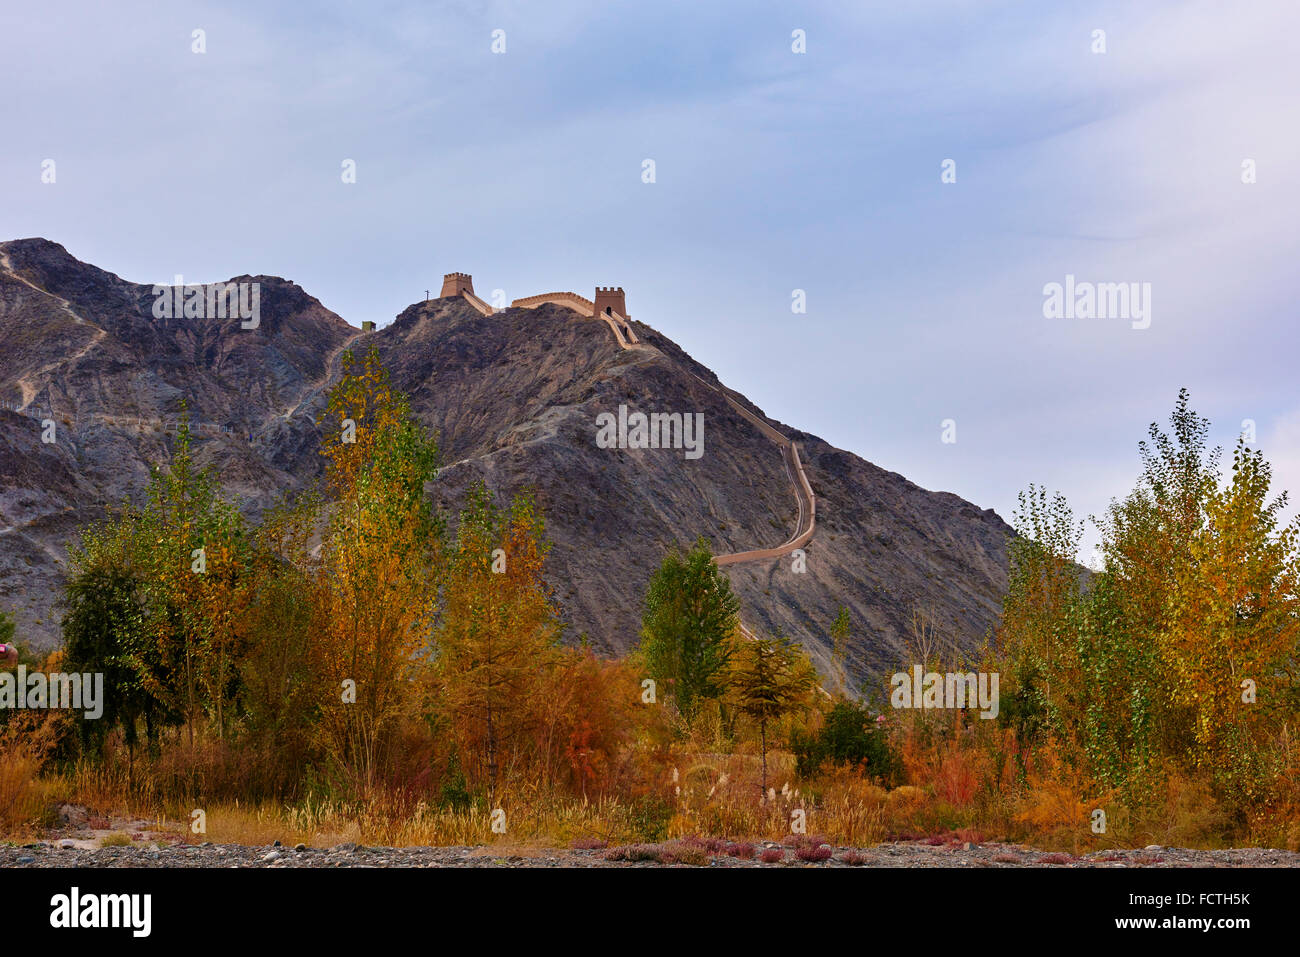 La Chine, la province de Gansu, Jiayuguan, la forteresse à l'extrémité ouest de la Grande Muraille, Unesco world heritage Banque D'Images